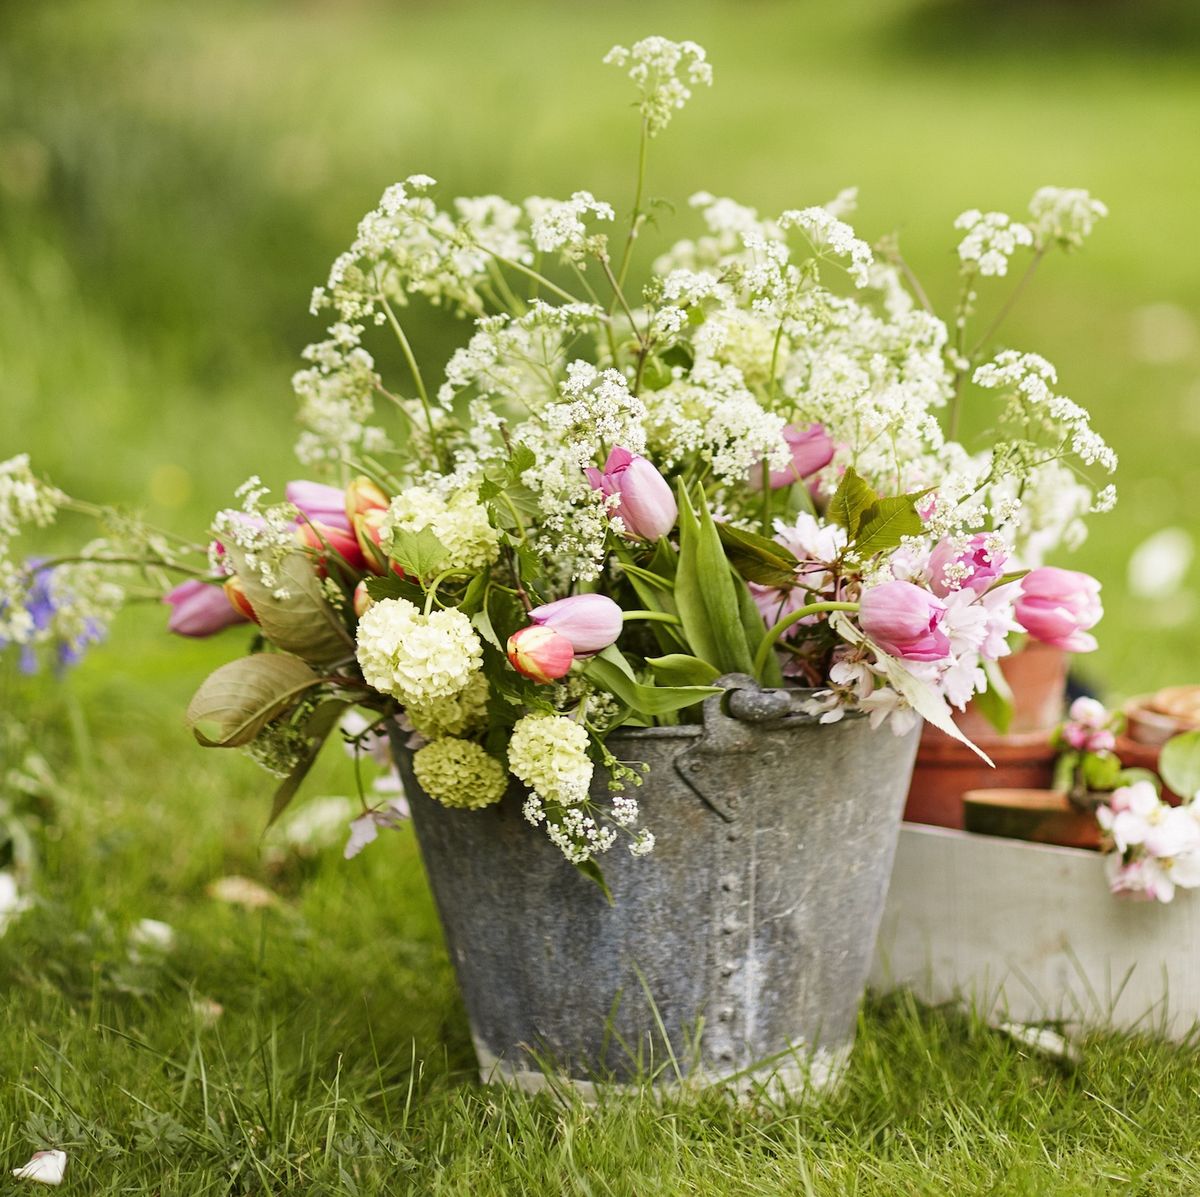 When Will My Wildflowers Bloom? - Homegrown Garden